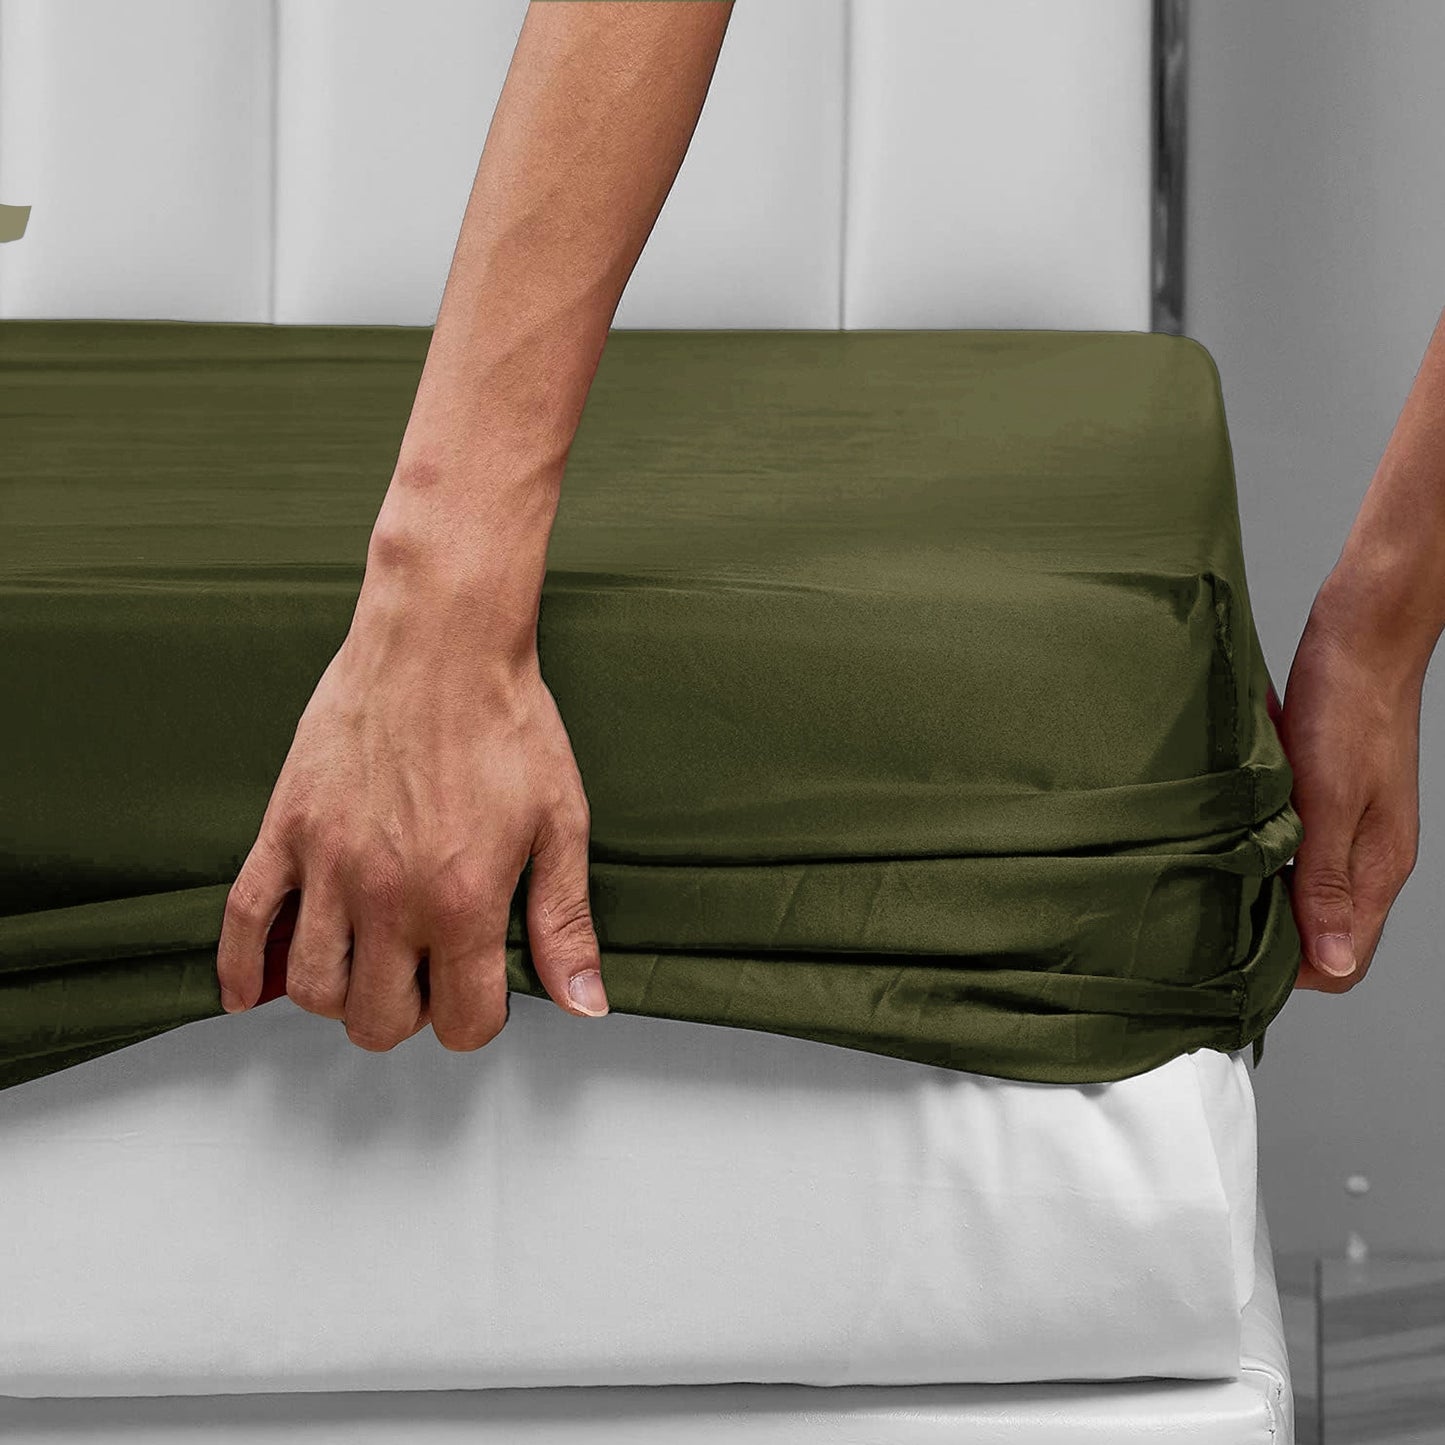 Olive Oasis Fitted Bedsheet Set